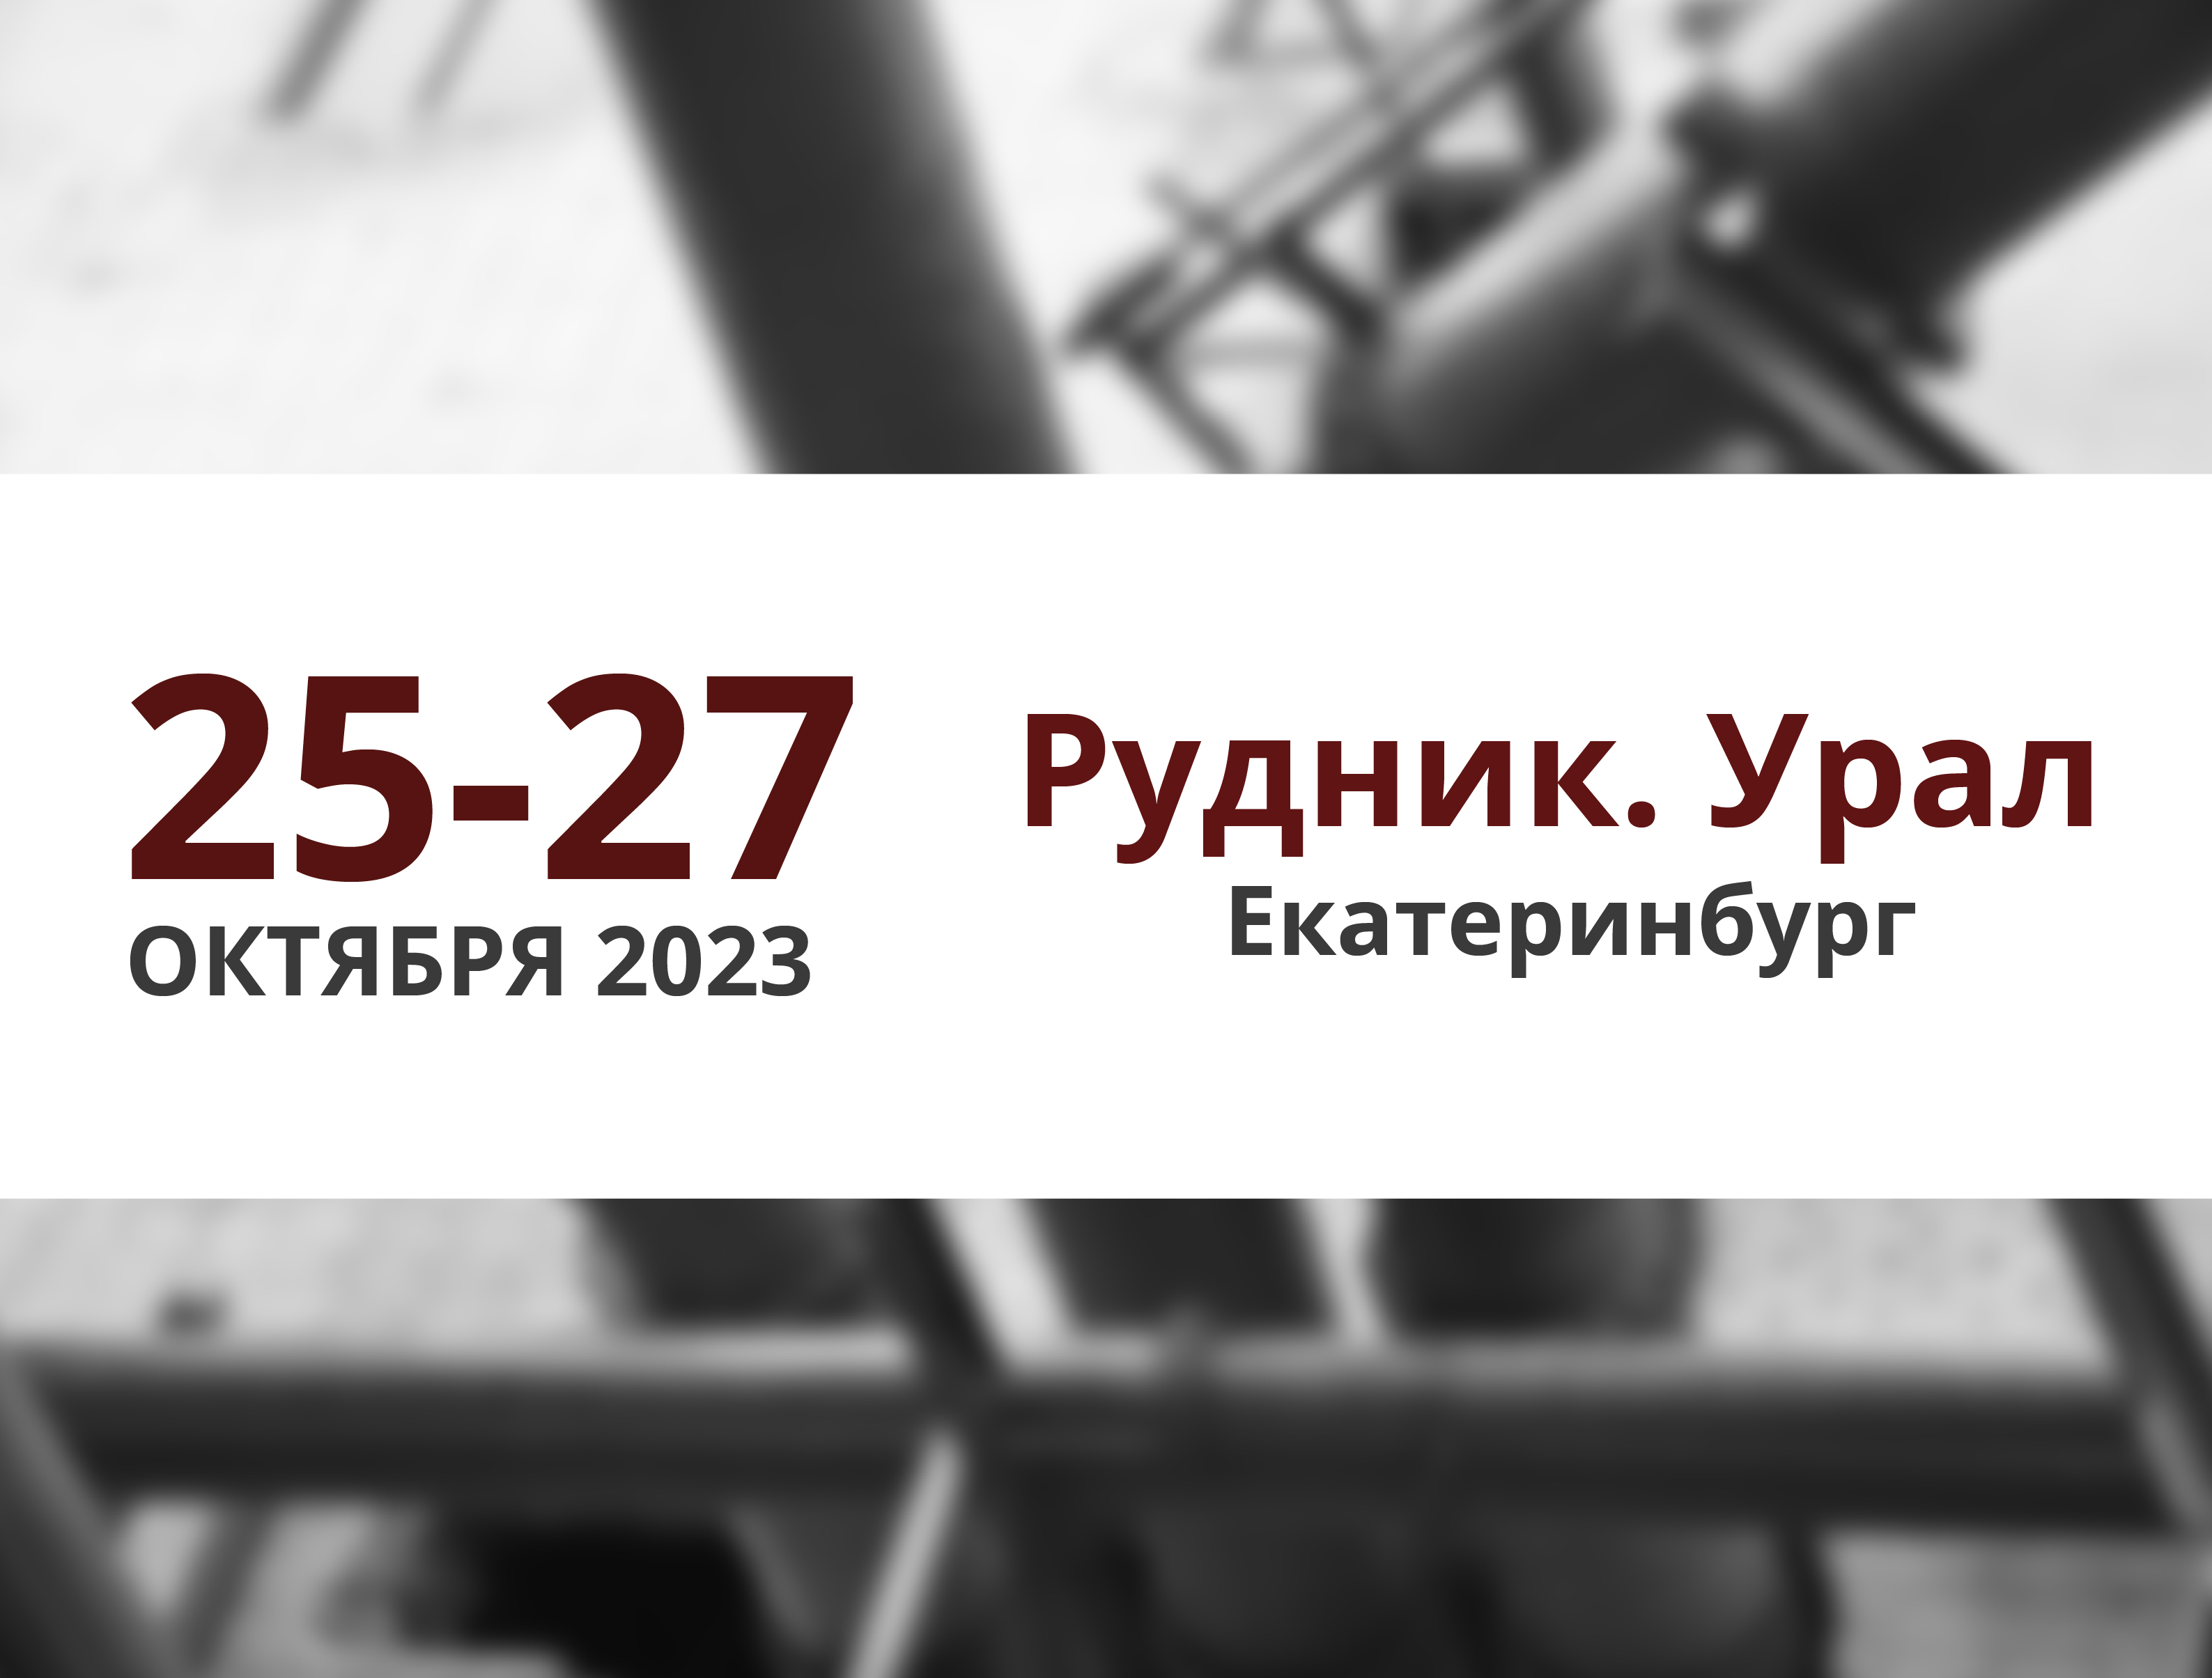 ПАССАТСТАЛЬ примет участие в выставке Рудник. Урал – 2023